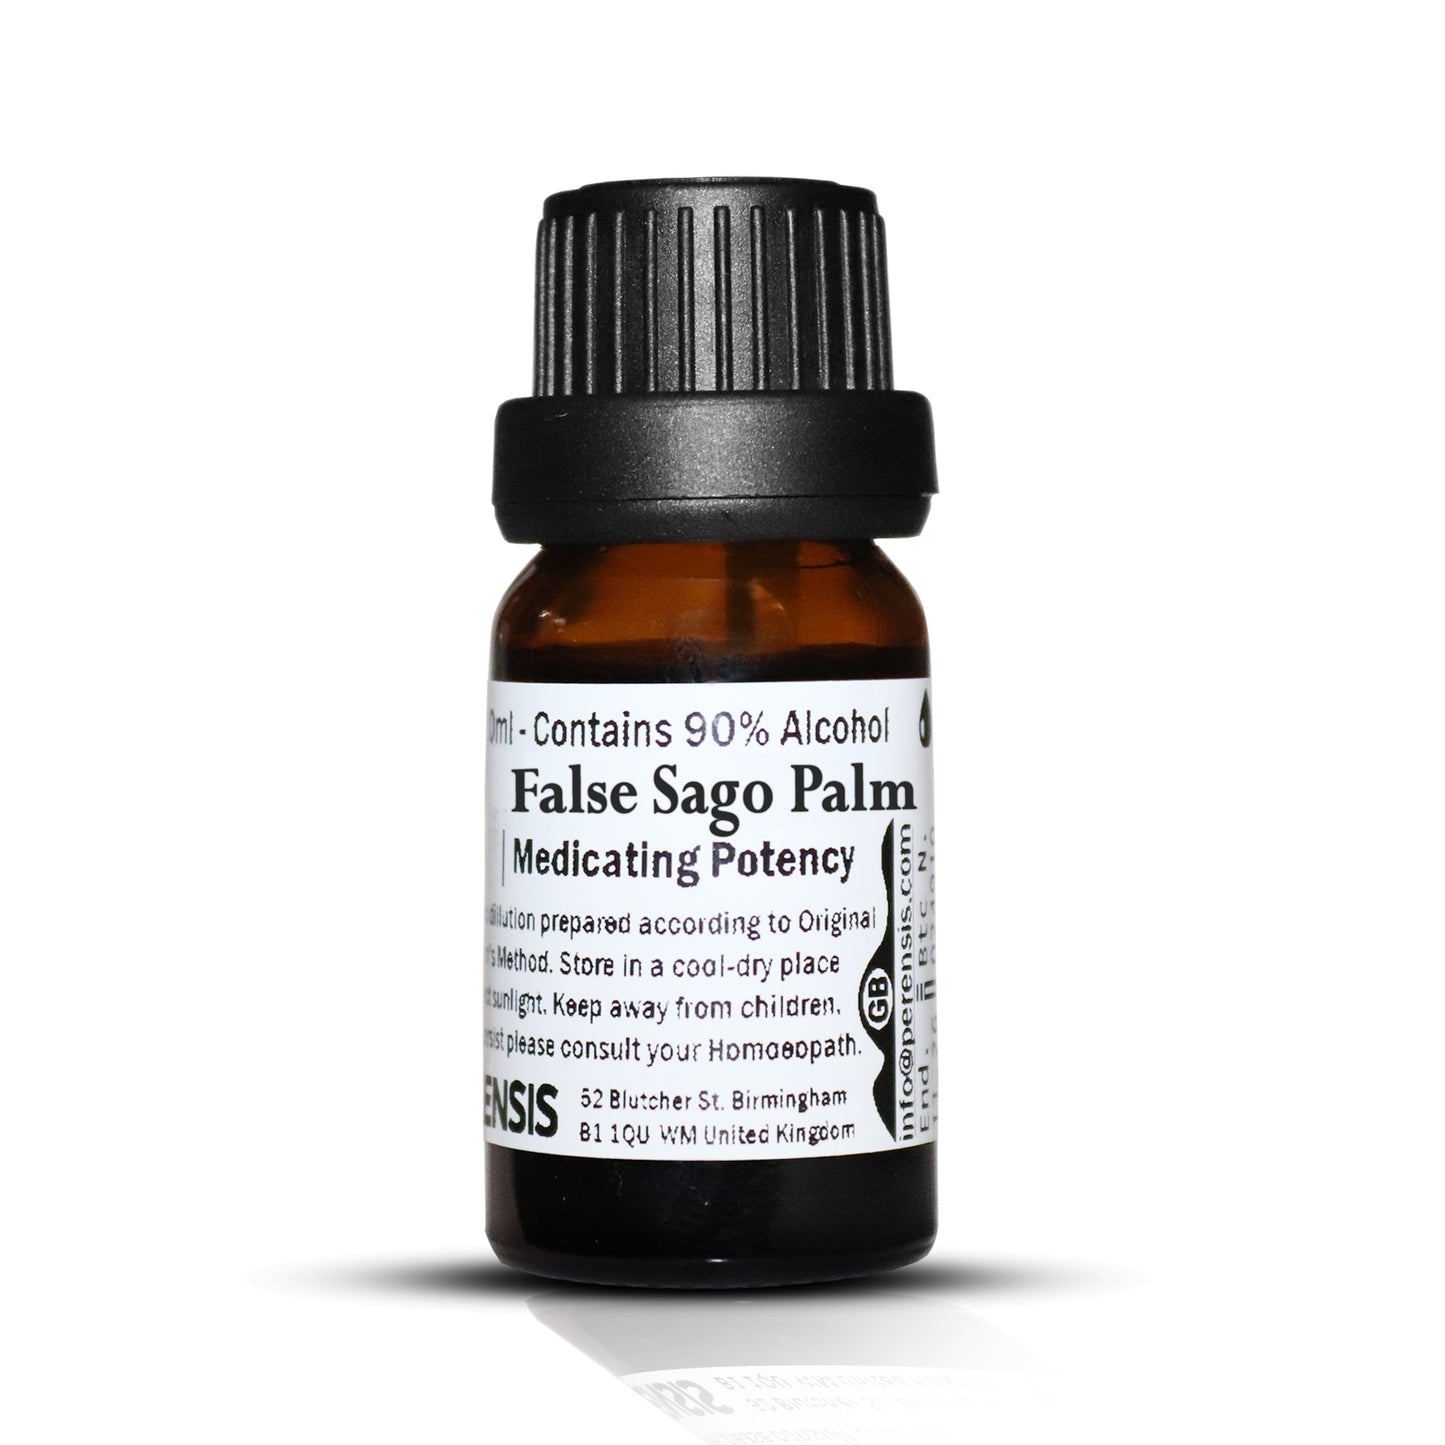 False Sago Palm